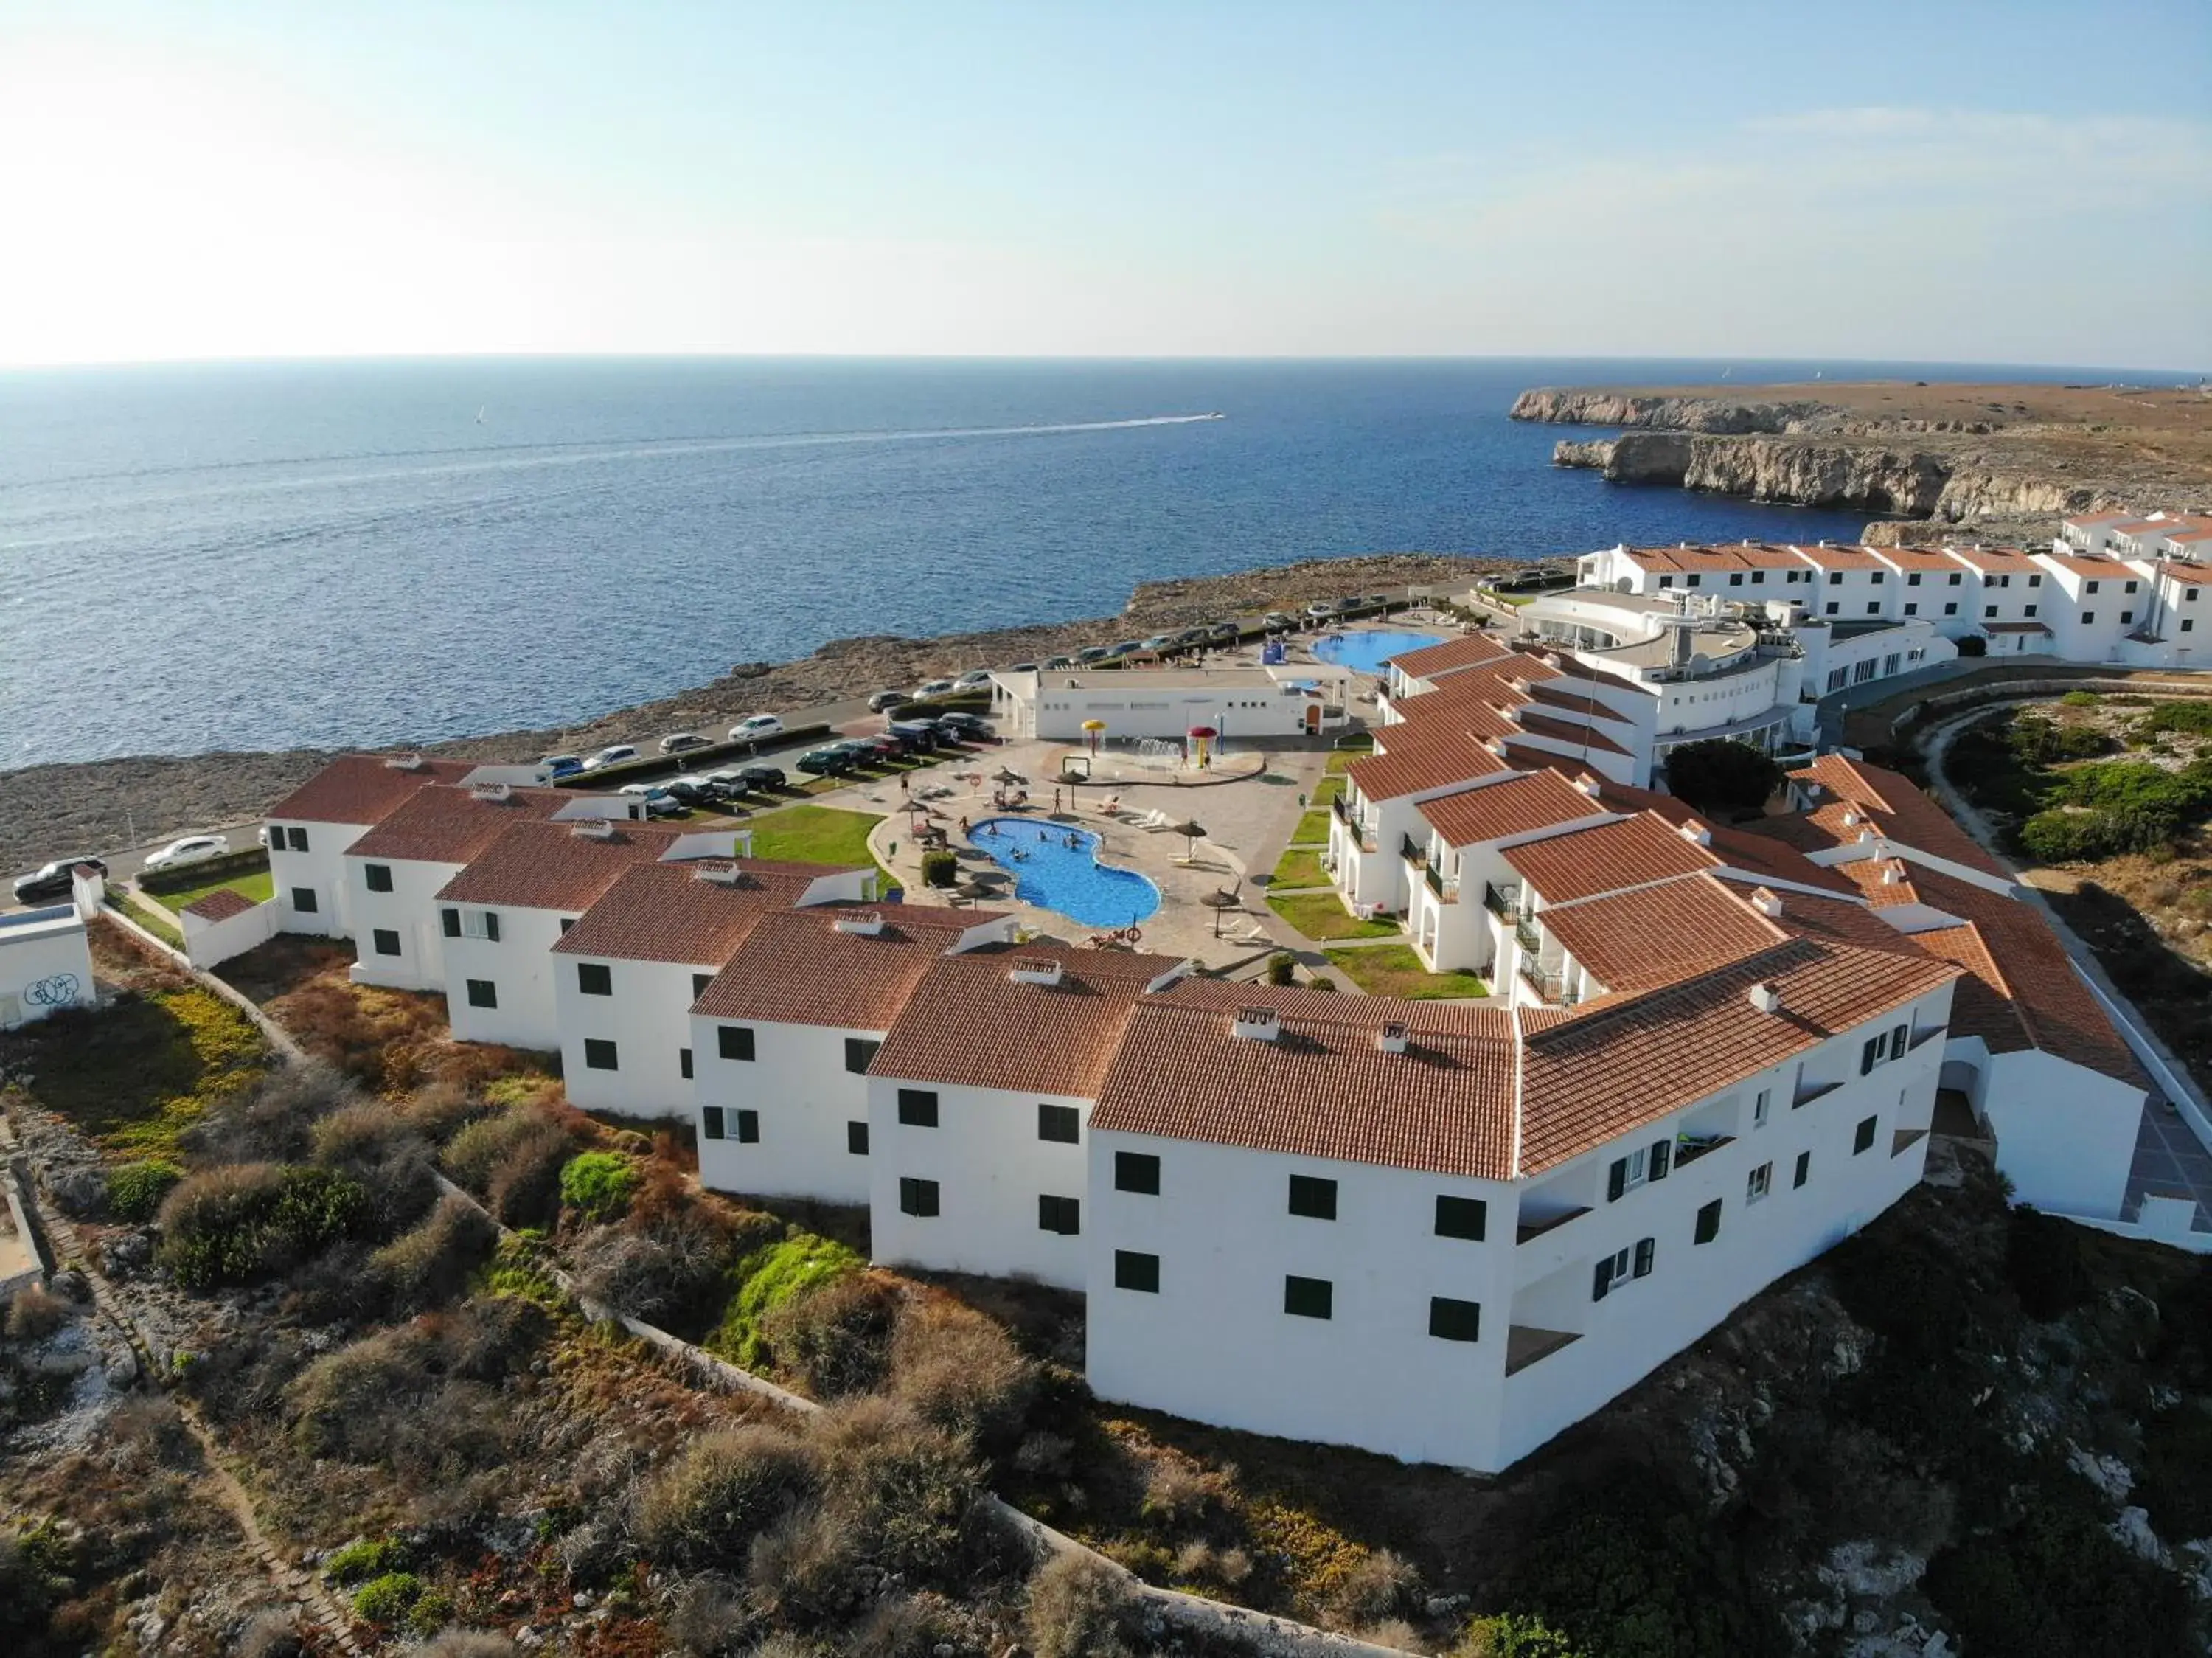 Facade/entrance, Bird's-eye View in RV Hotel Sea Club Menorca